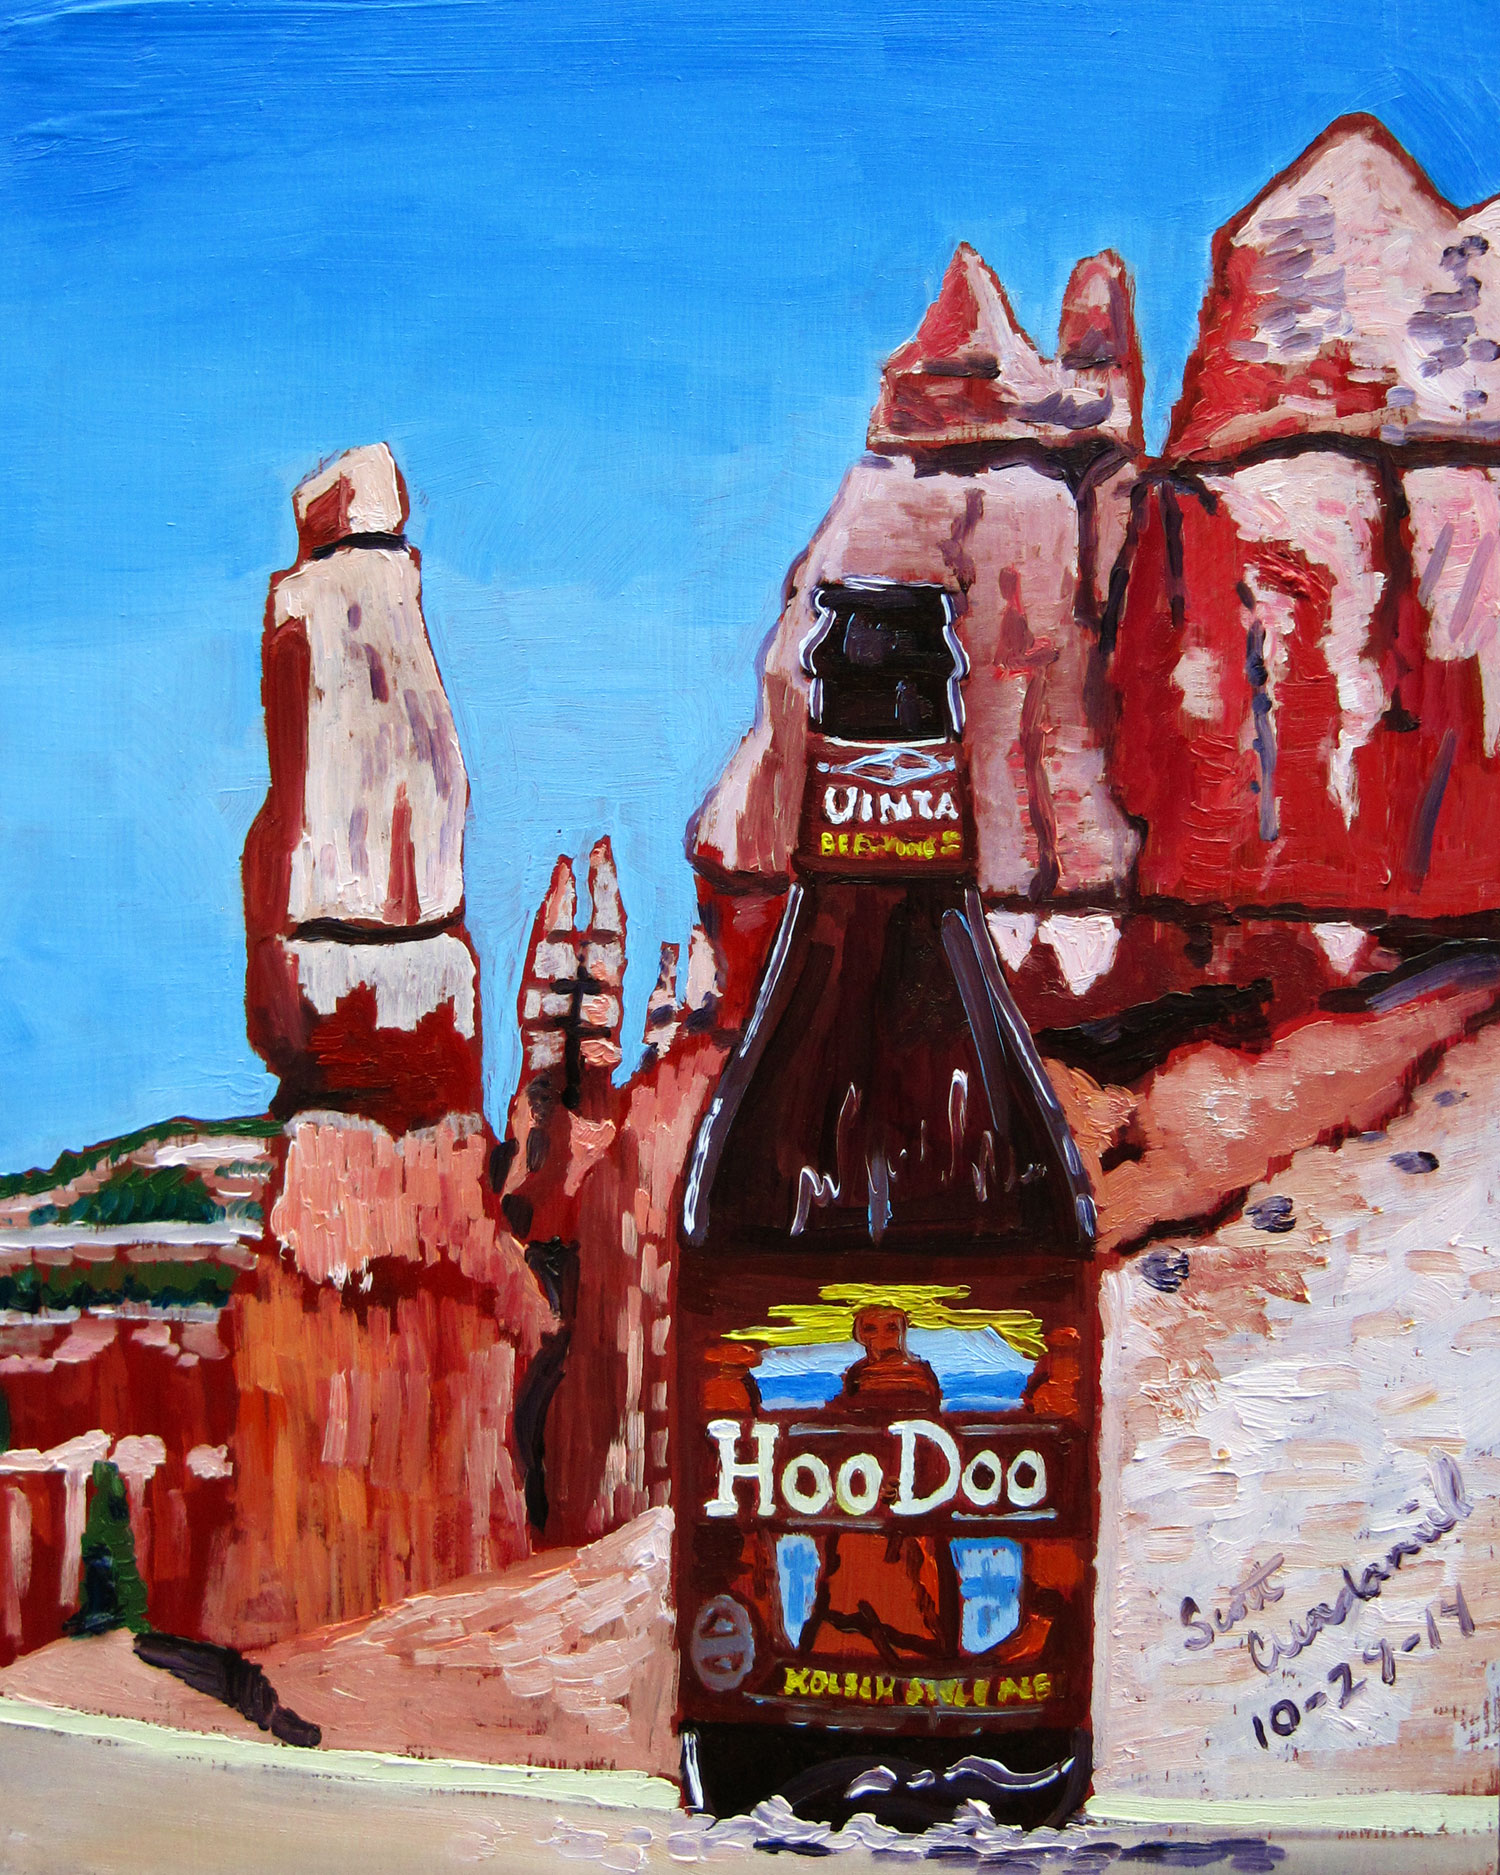 Beer Painting of HooDoo kolsch by uinta brewing year of beer paintings scott clendaniel